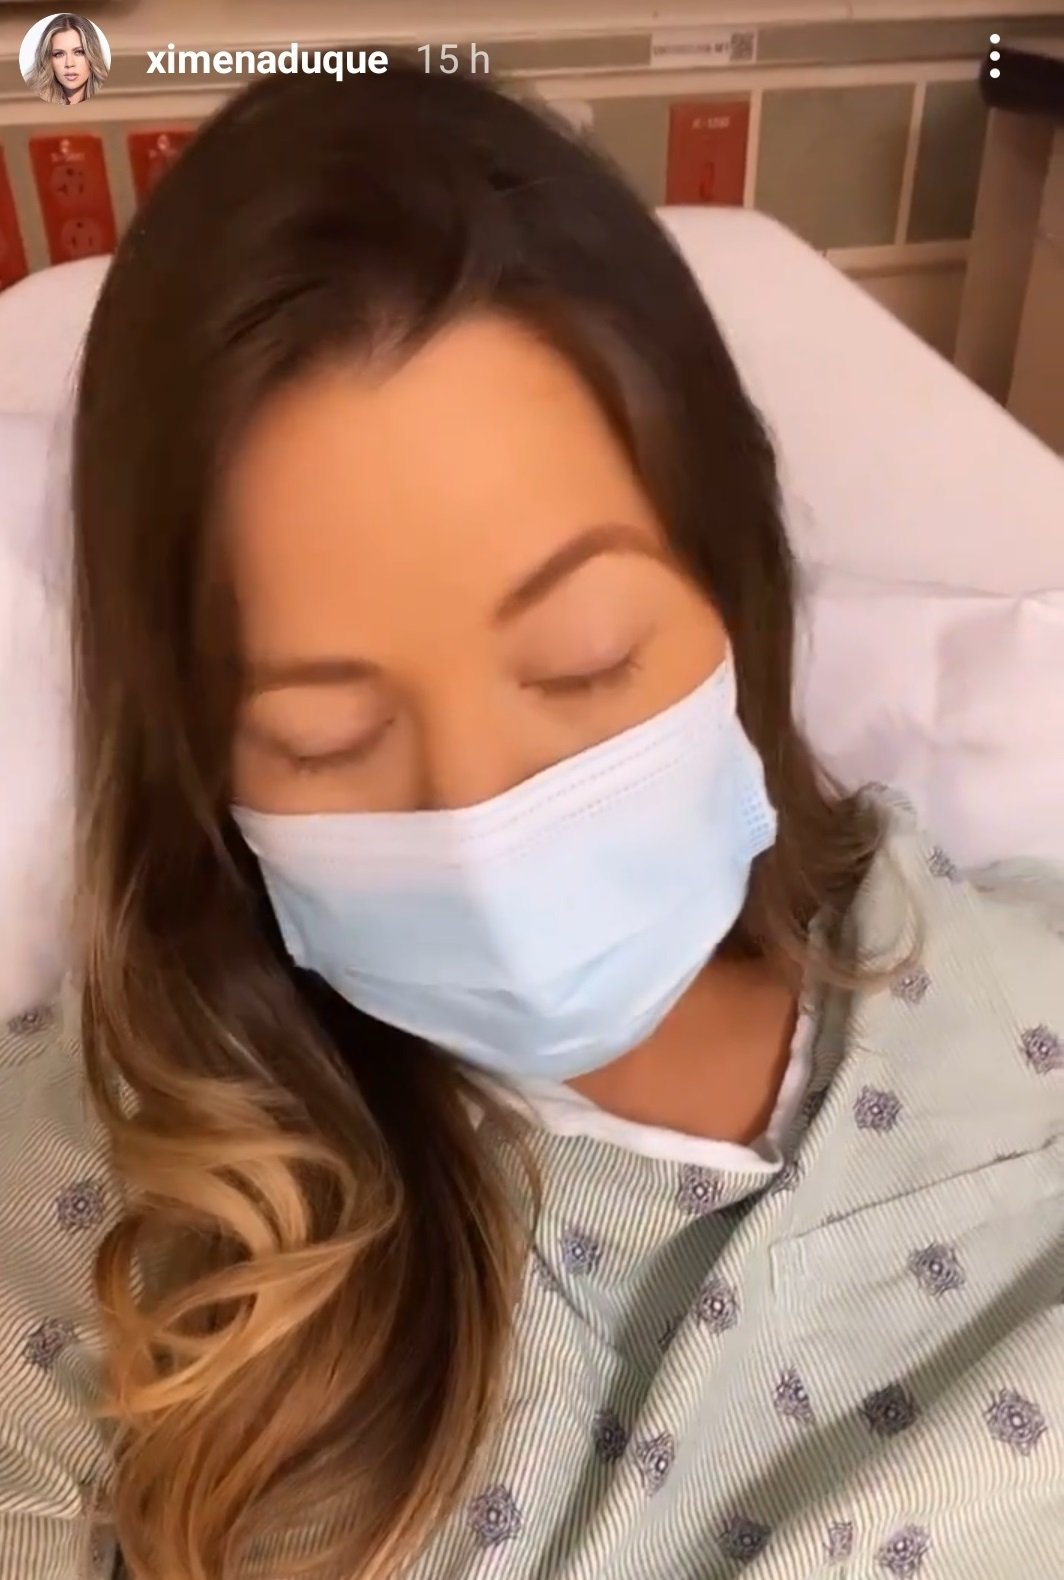 Ximena Duque desde el hospital. | Foto: Captura de Instagram/ximenaduque